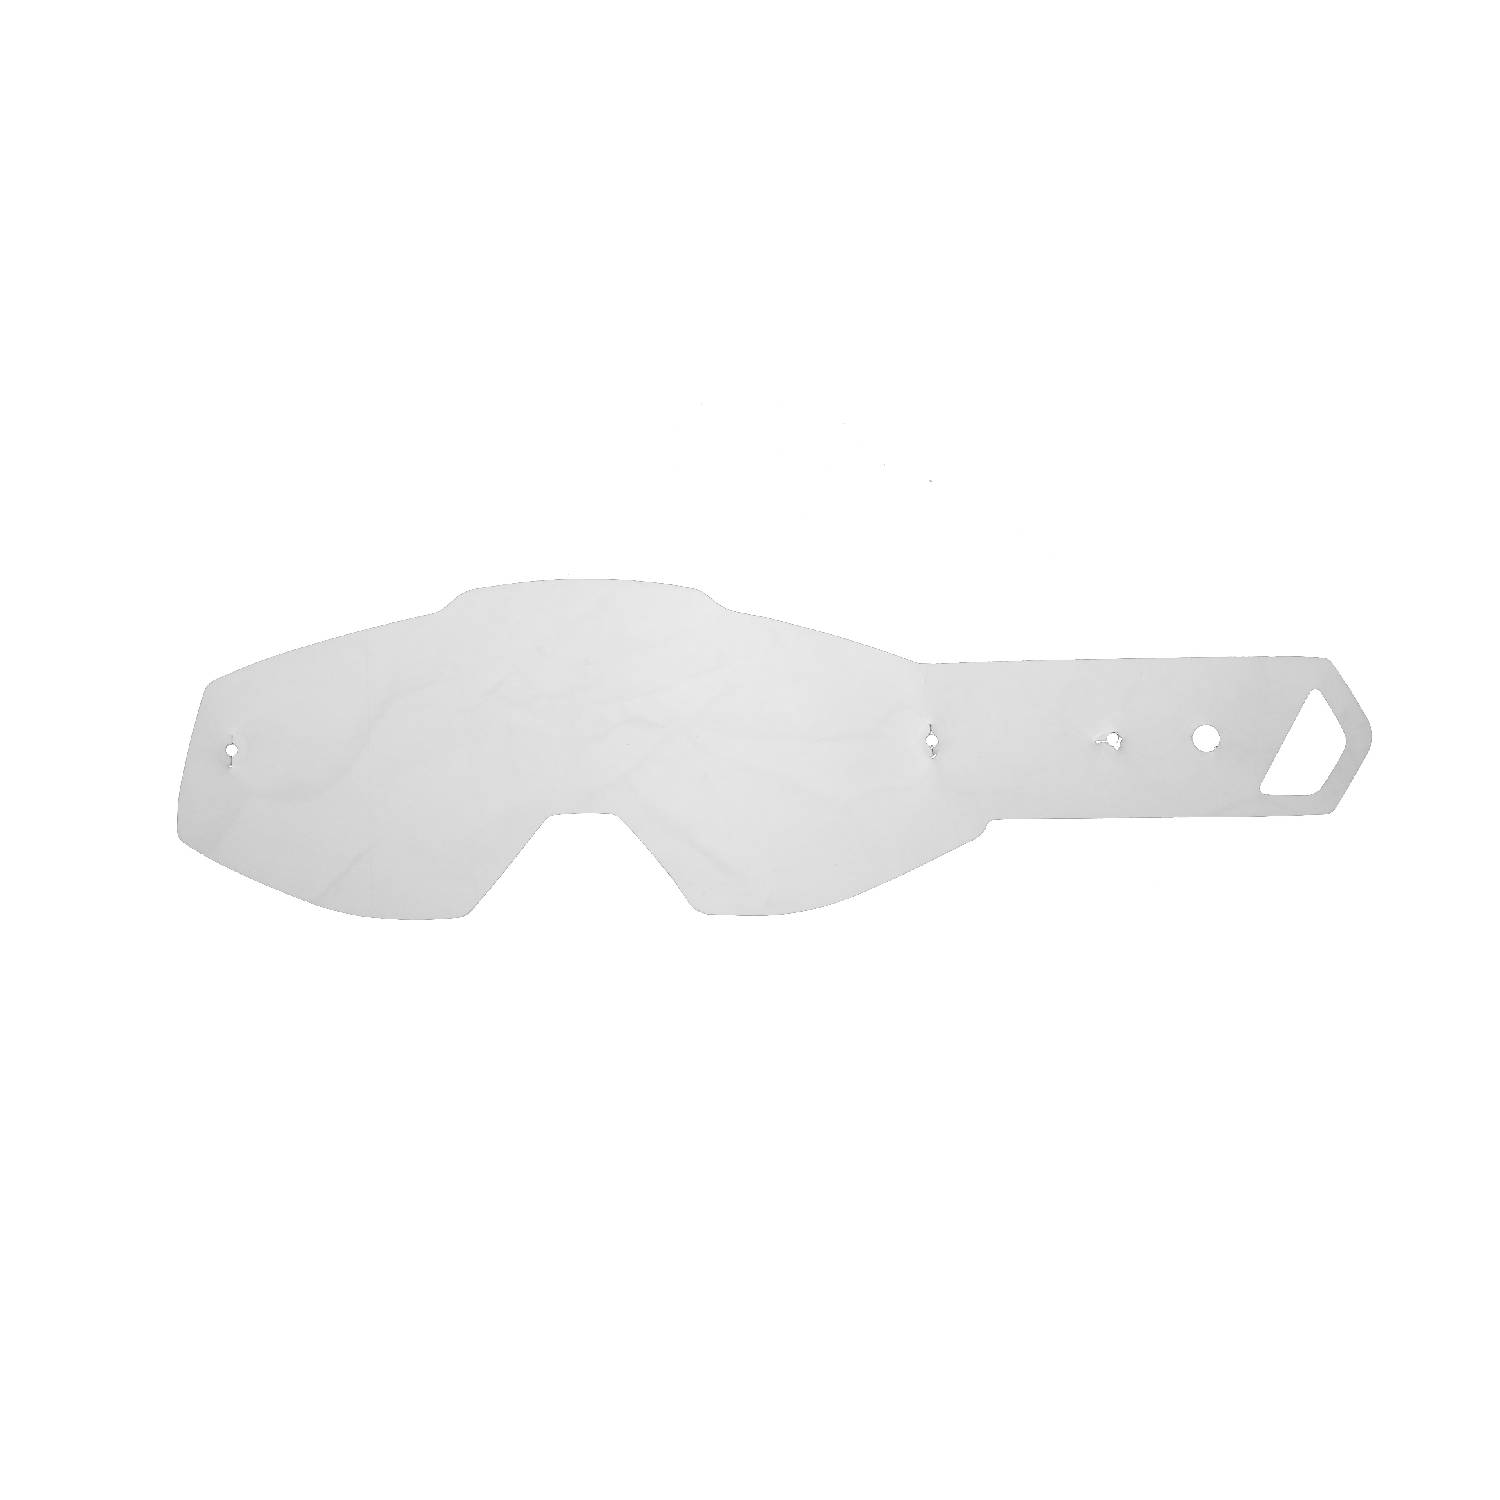 Lenti a strappo compatibili per occhiale/maschera 100% Racecraft / Strata / Accuri / Mercury / Strata Plus / Accuri Plus kit 20 pz